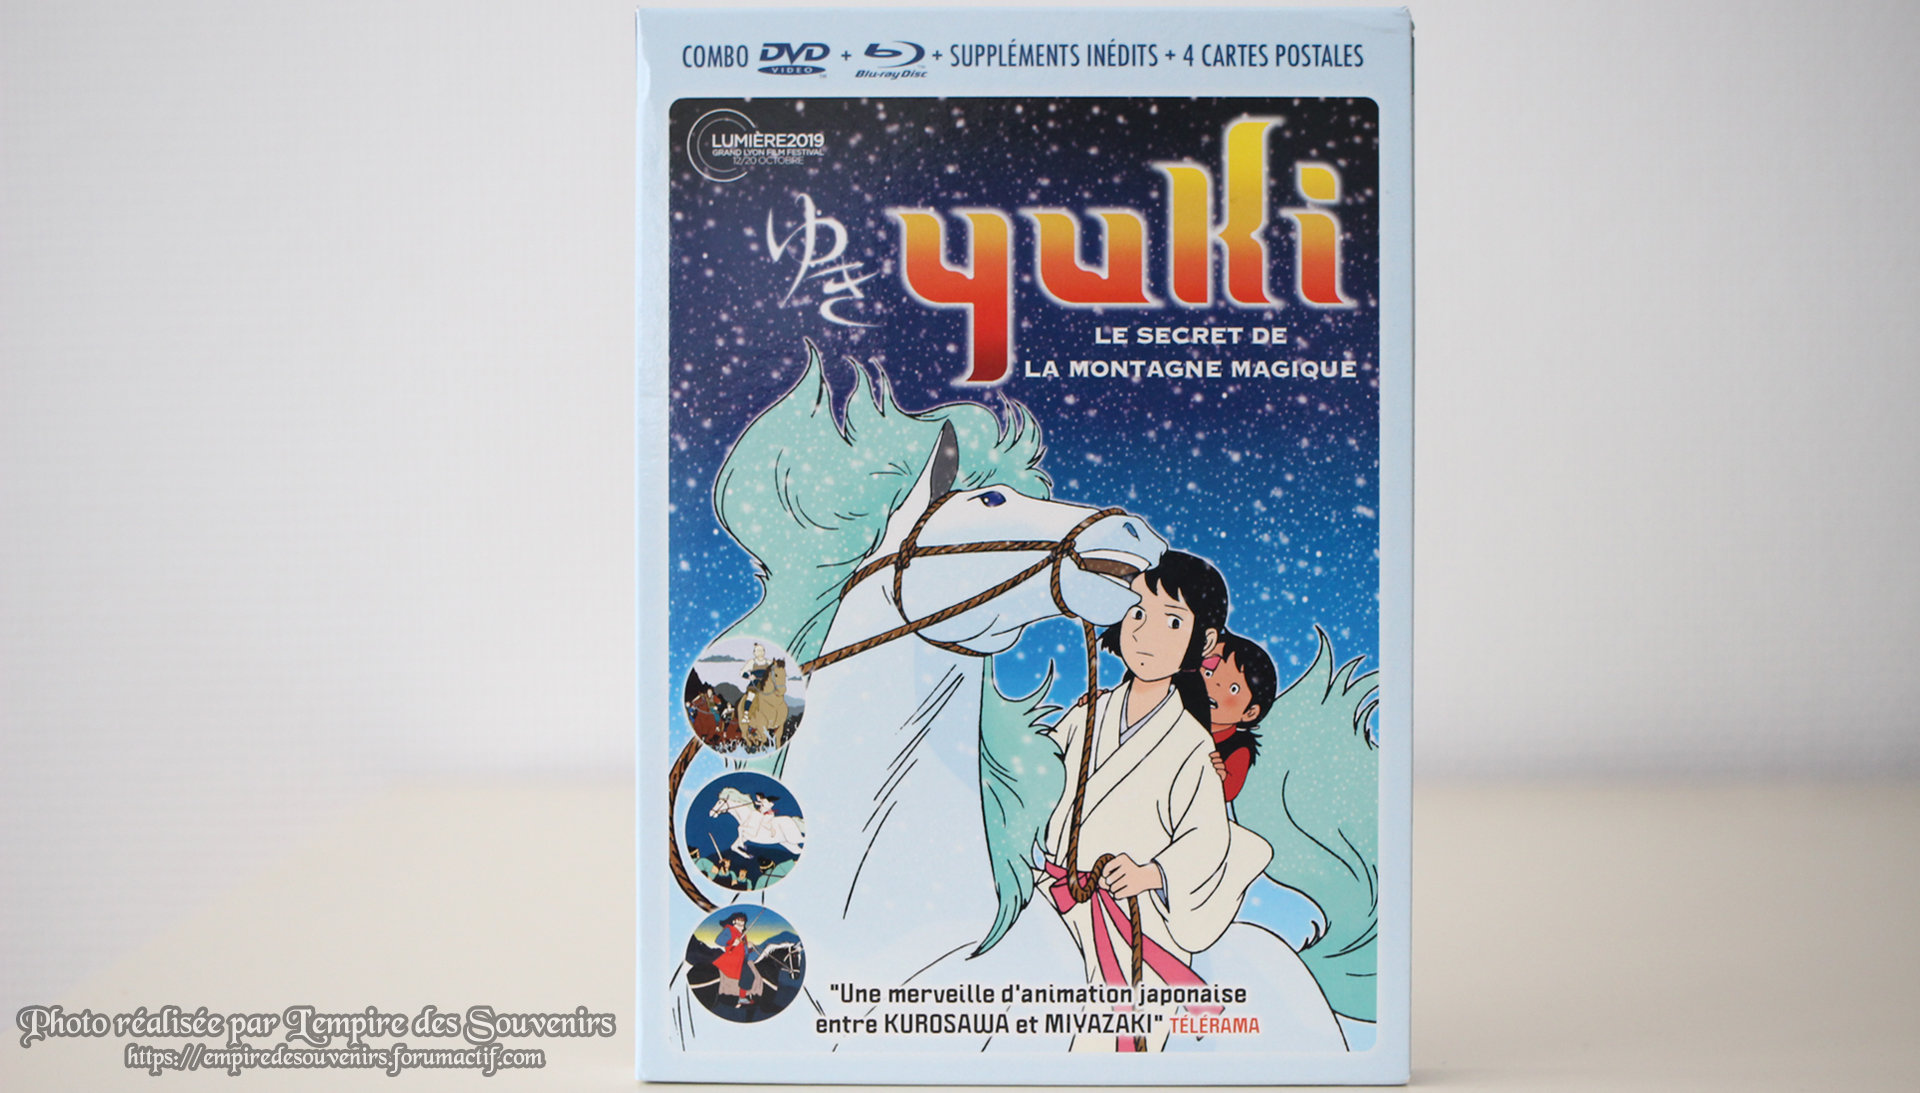 Yuki le secret de la montagne magique, test Blu-ray Iuqp